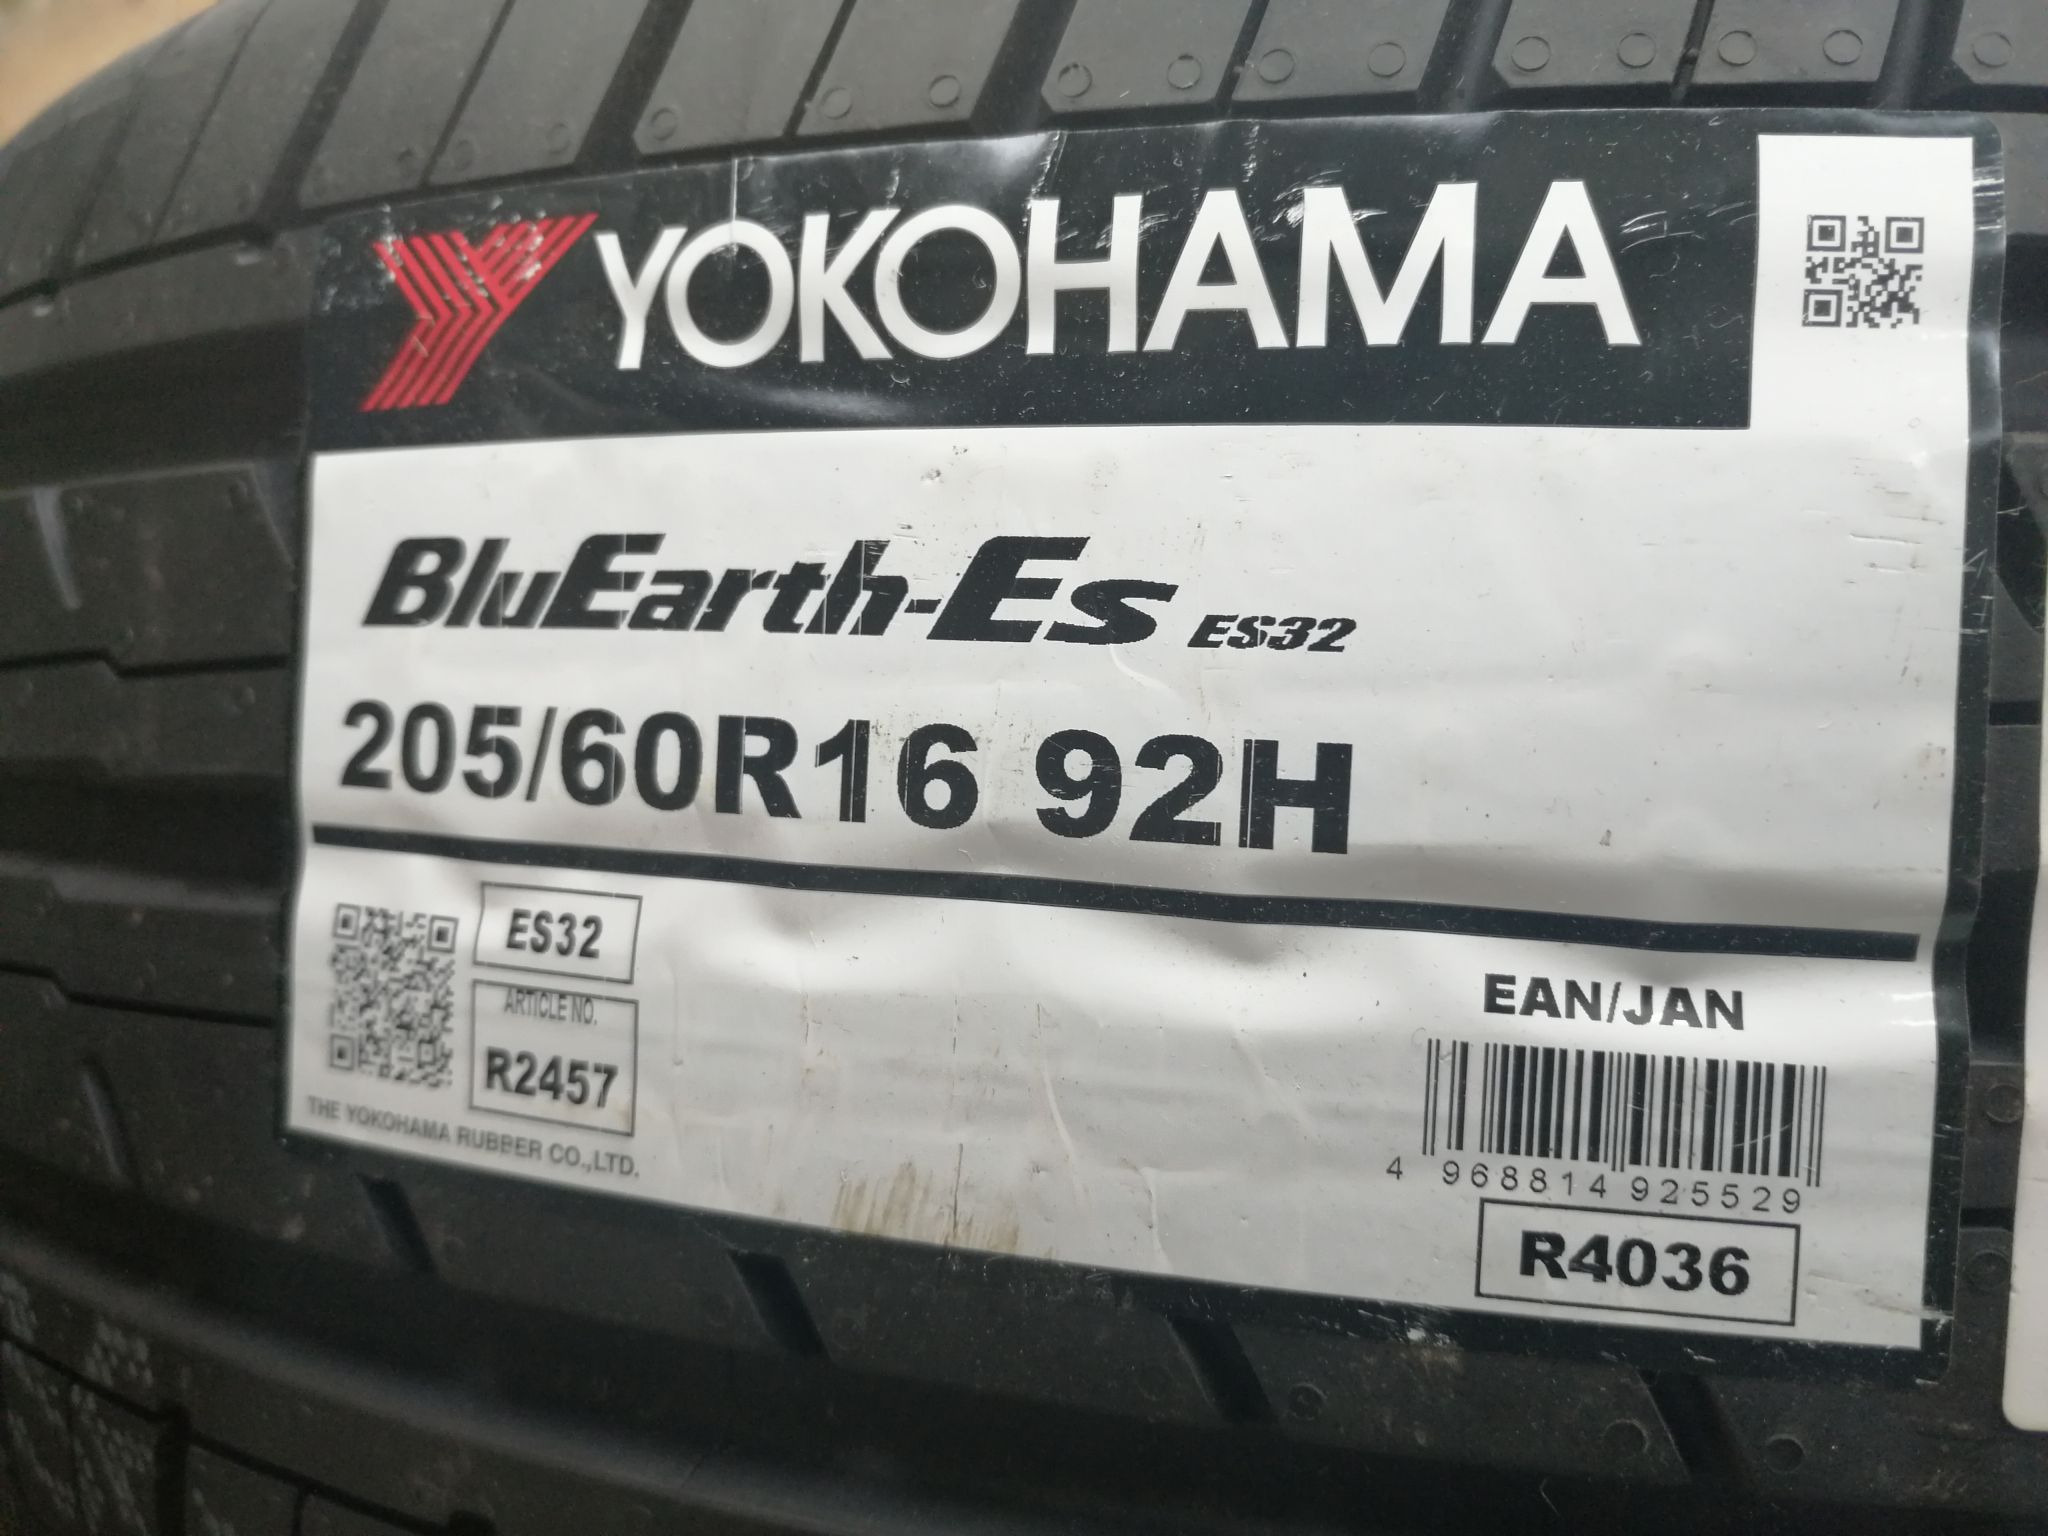 Yokohama es32 205/60r16 92h. 205/60r16 Yokohama BLUEARTH-es es32 92 h. 205/60/16 H92 Yokohama es32. BLUEARTH-es es32 205/60 r16 Mazda. Yokohama bluearth es32 205 55 r16 купить